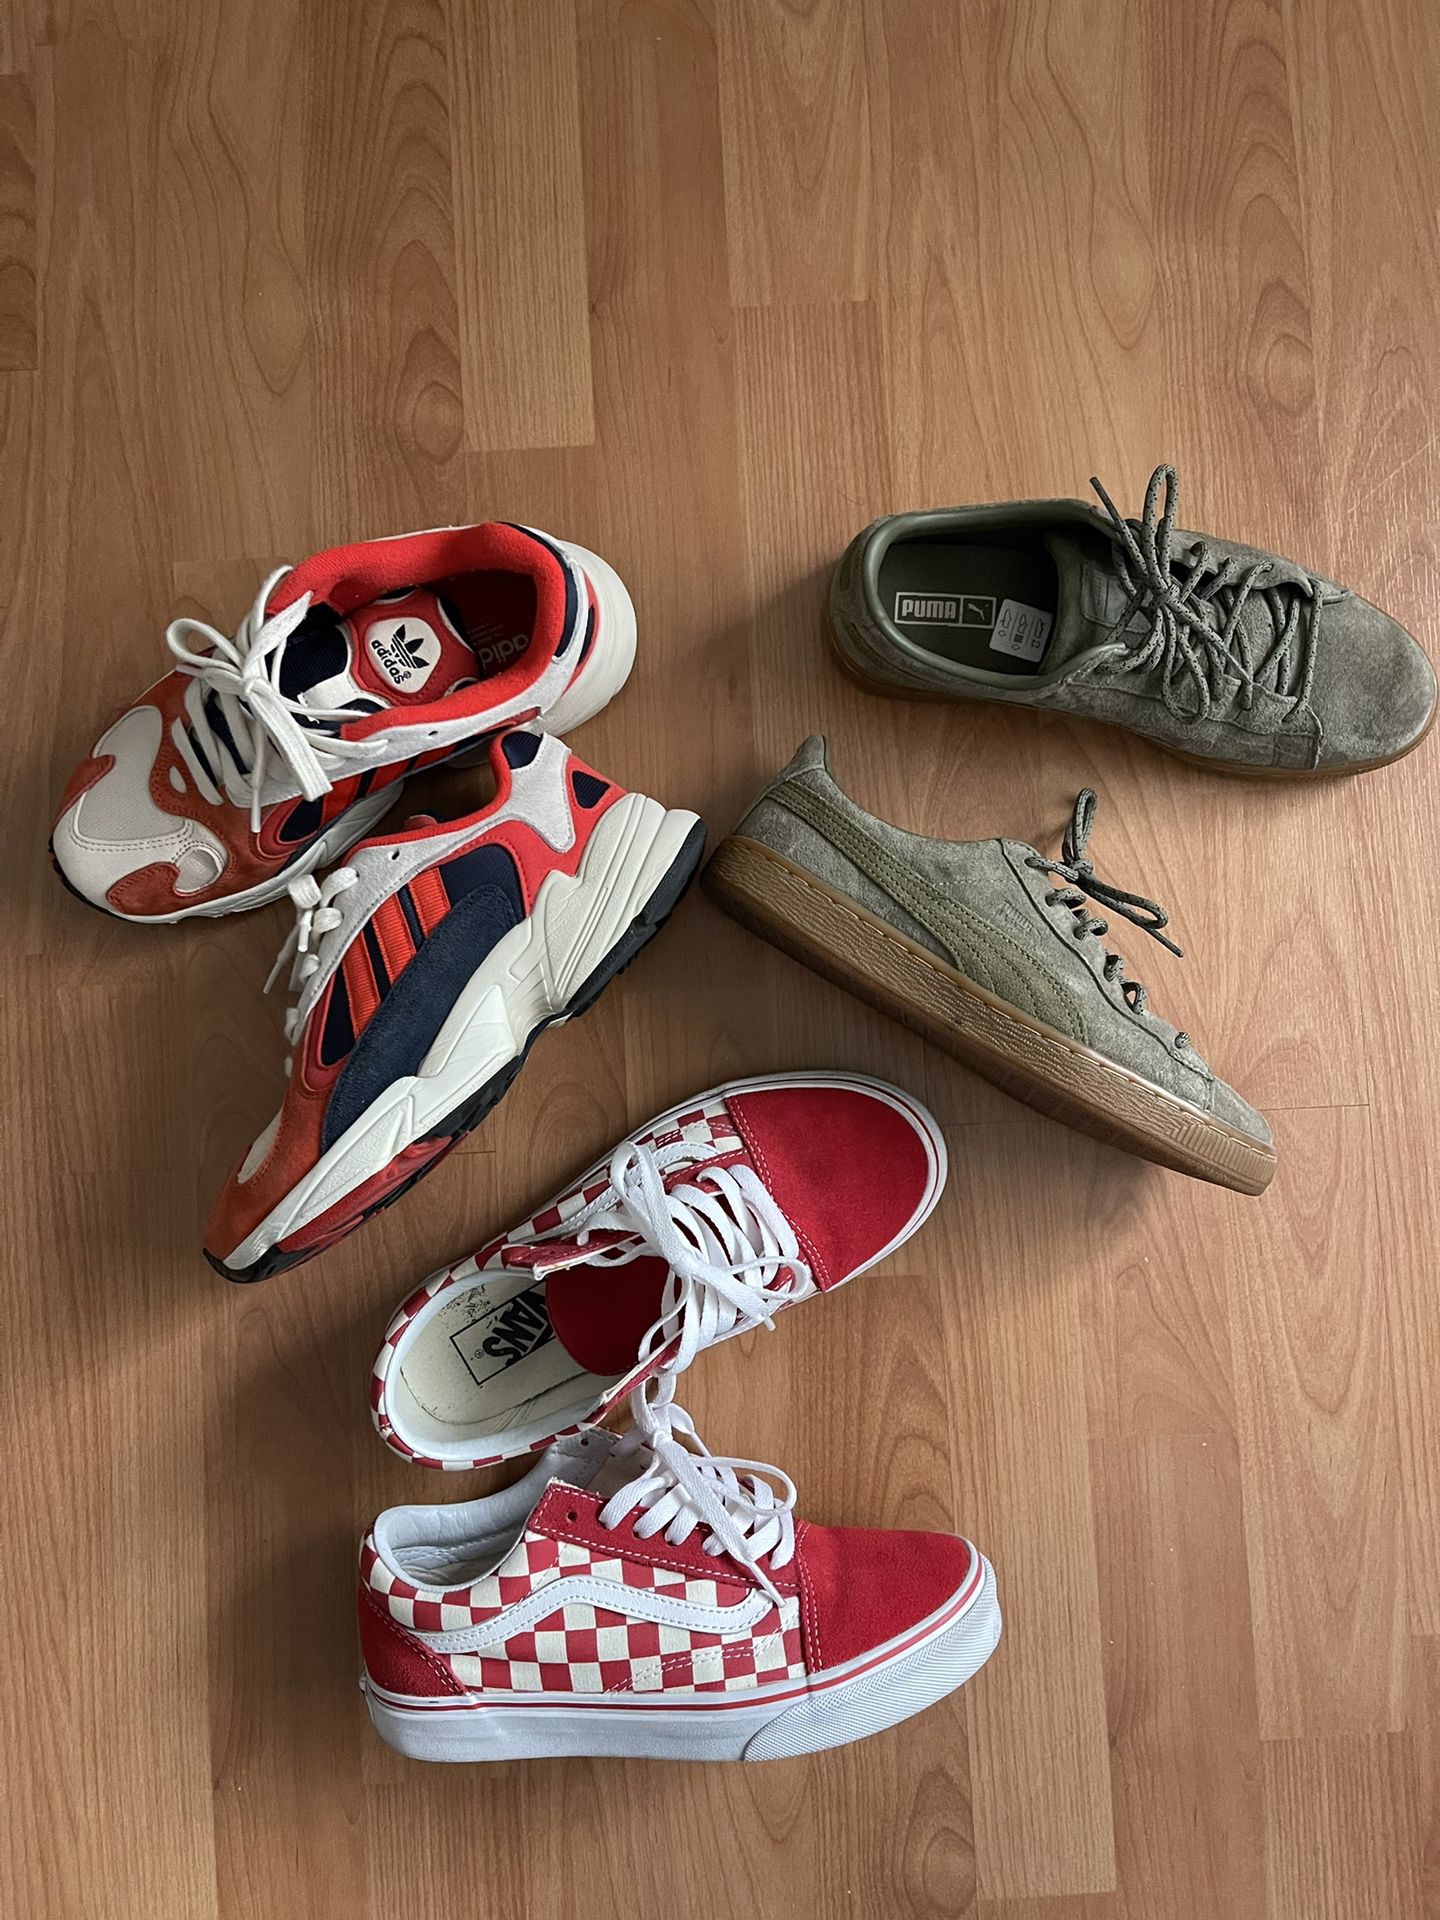 Shoes Vans, Pumas and Adidas